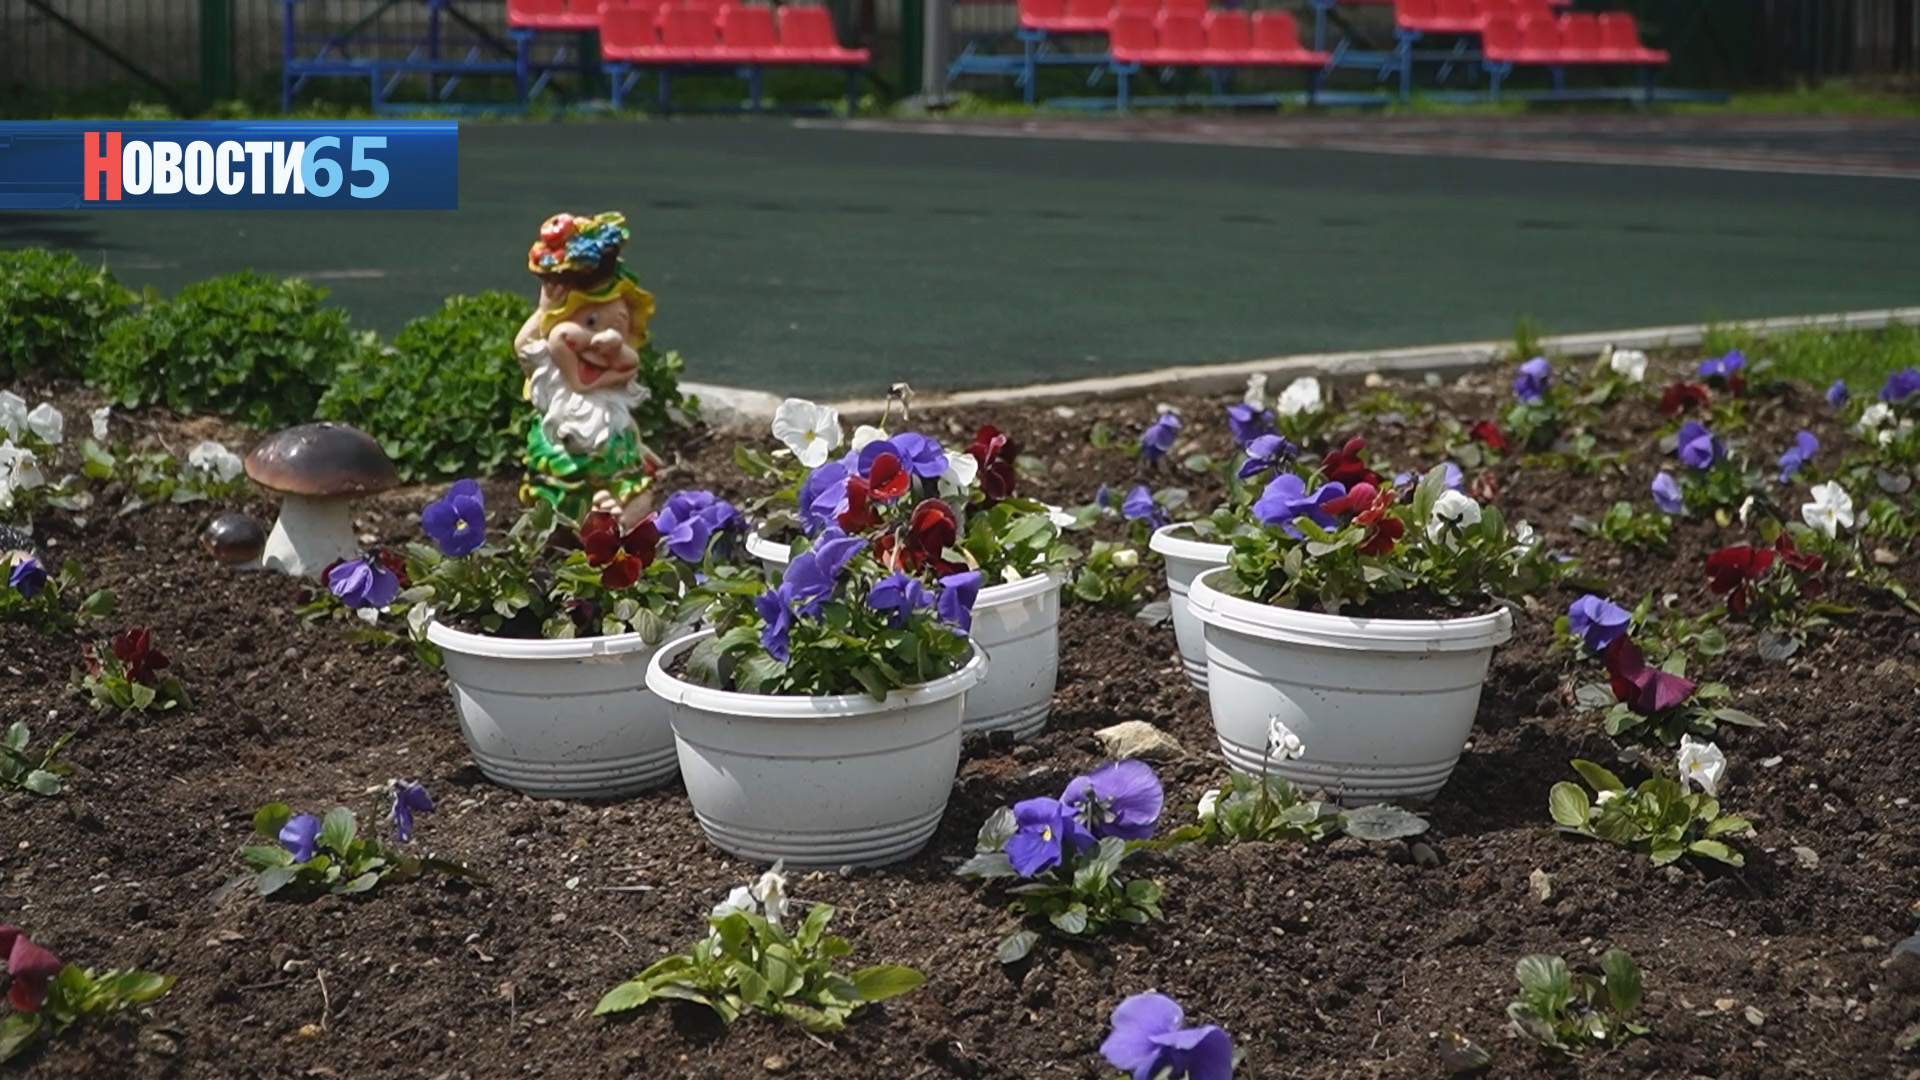 Яркий детский сад. Сотрудники дошкольных учреждений высаживают цветы на своих территориях